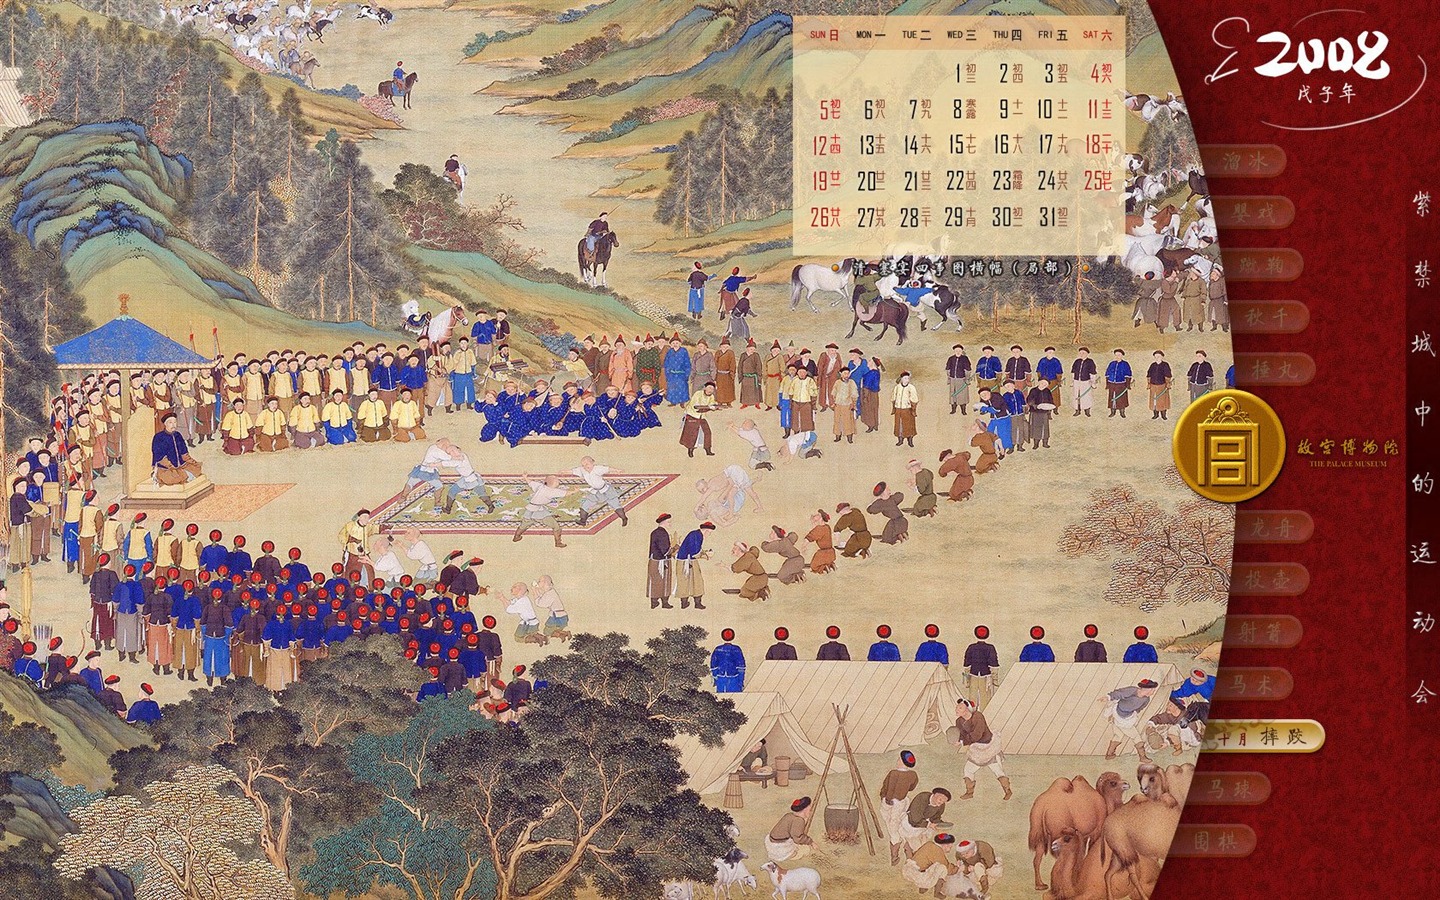 北京故宫博物院 文物展壁纸(二)19 - 1440x900